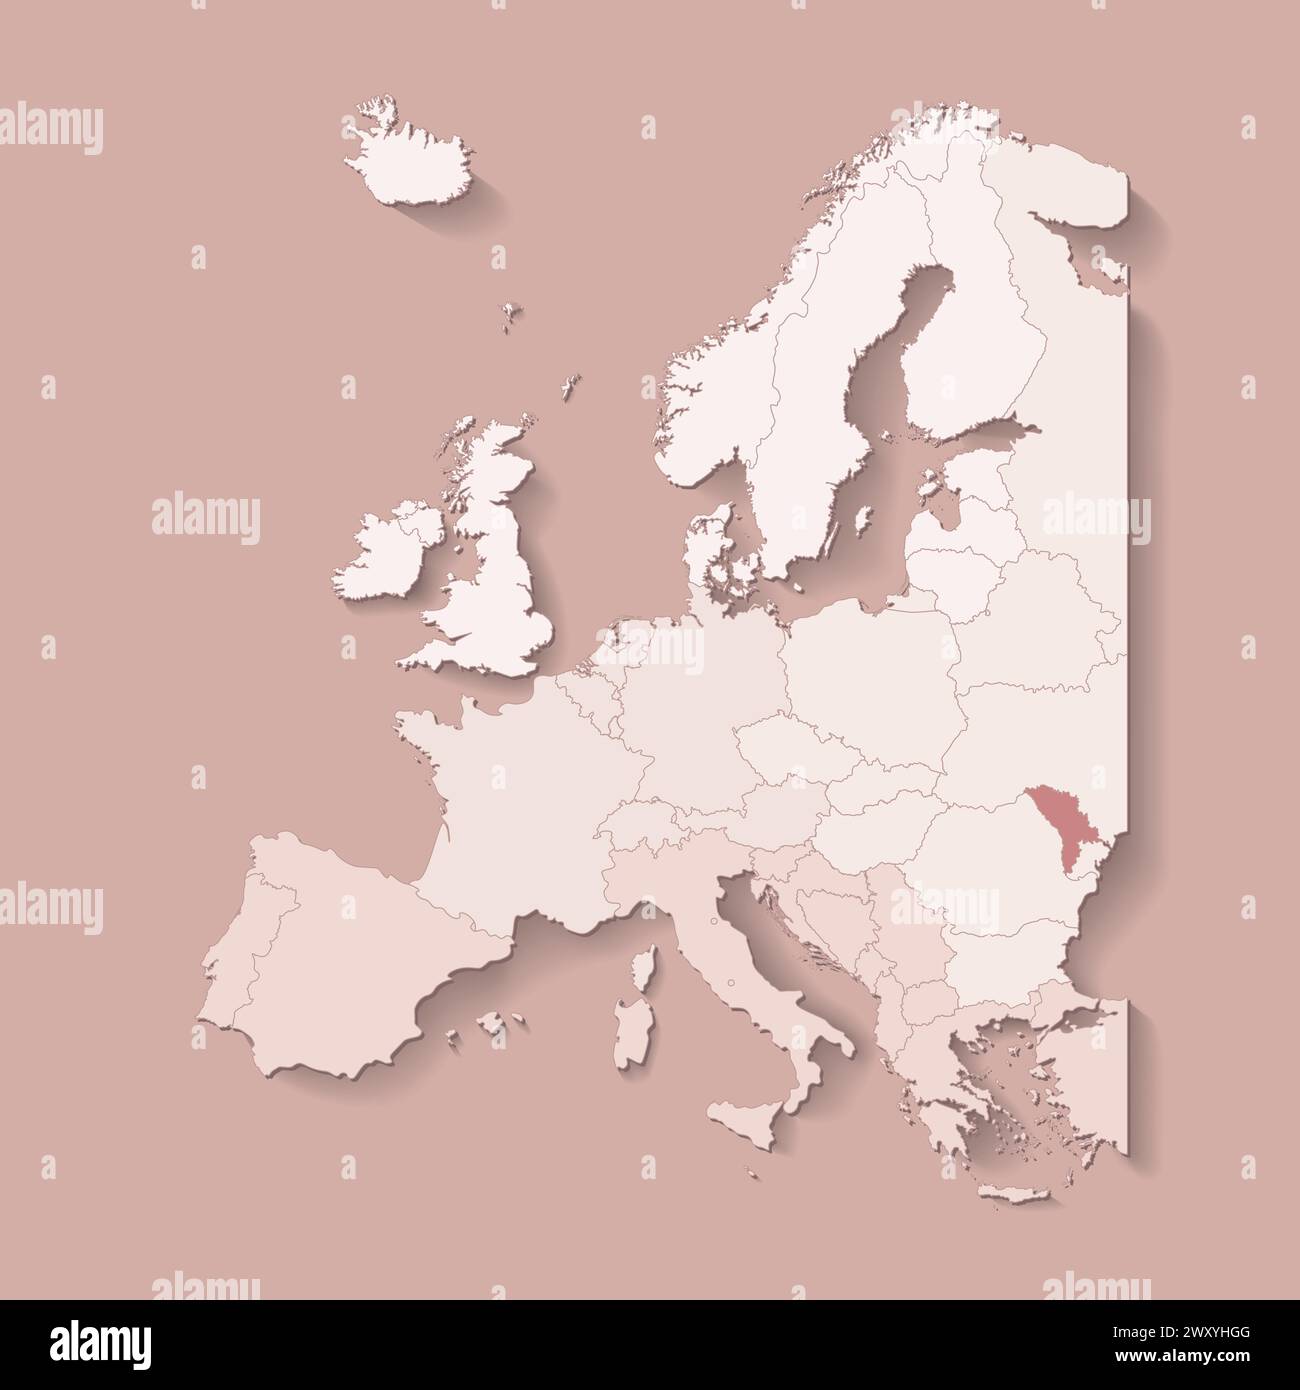 Illustrazione vettoriale con terra europea con confini di stati e paese contrassegnato Moldova. Mappa politica di colore marrone con occidentale, sud e così via Illustrazione Vettoriale